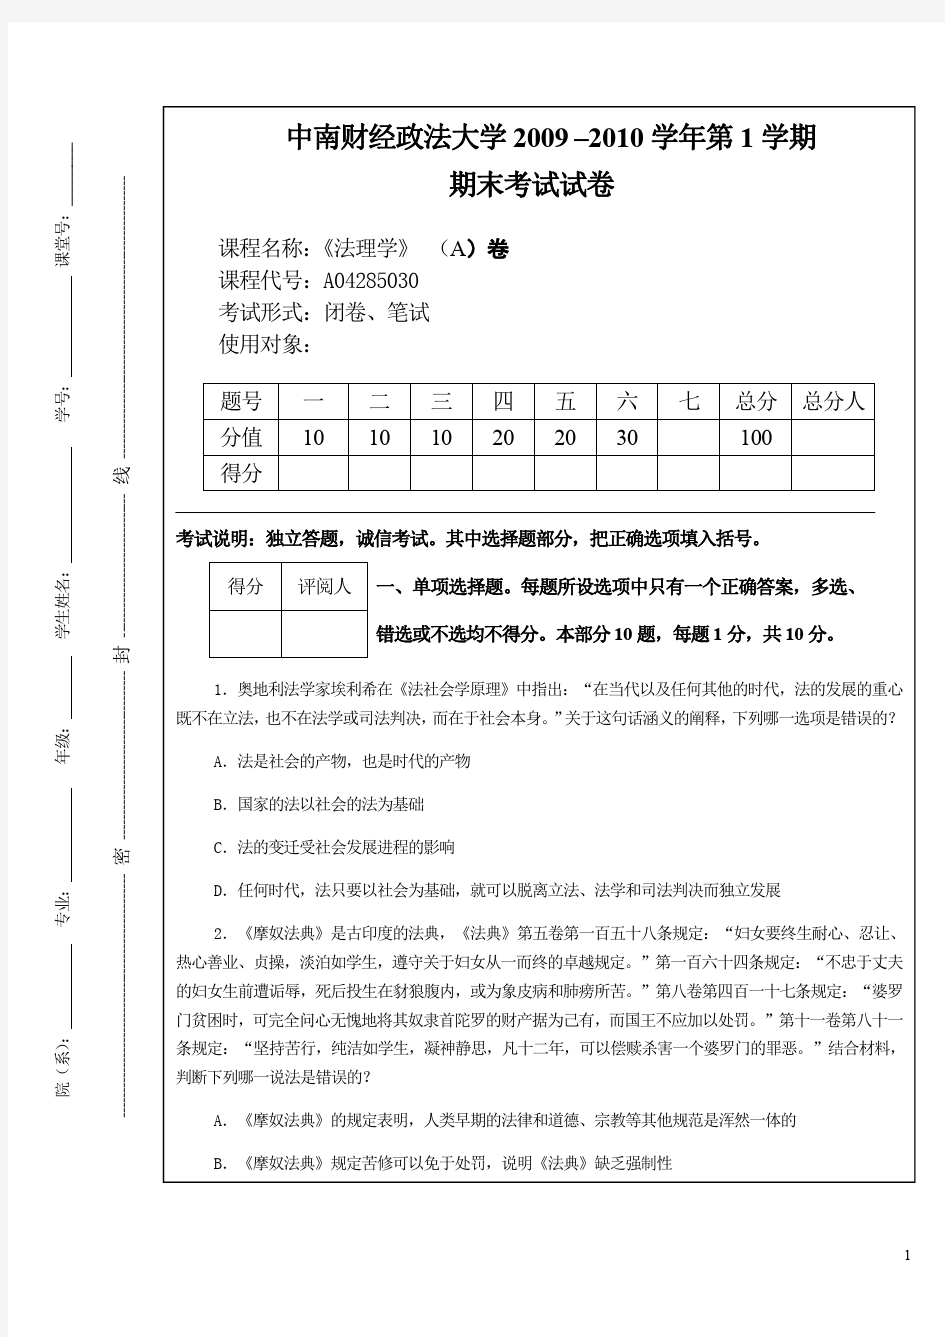 2009法理学期末考试试卷(中南财经政法大学)